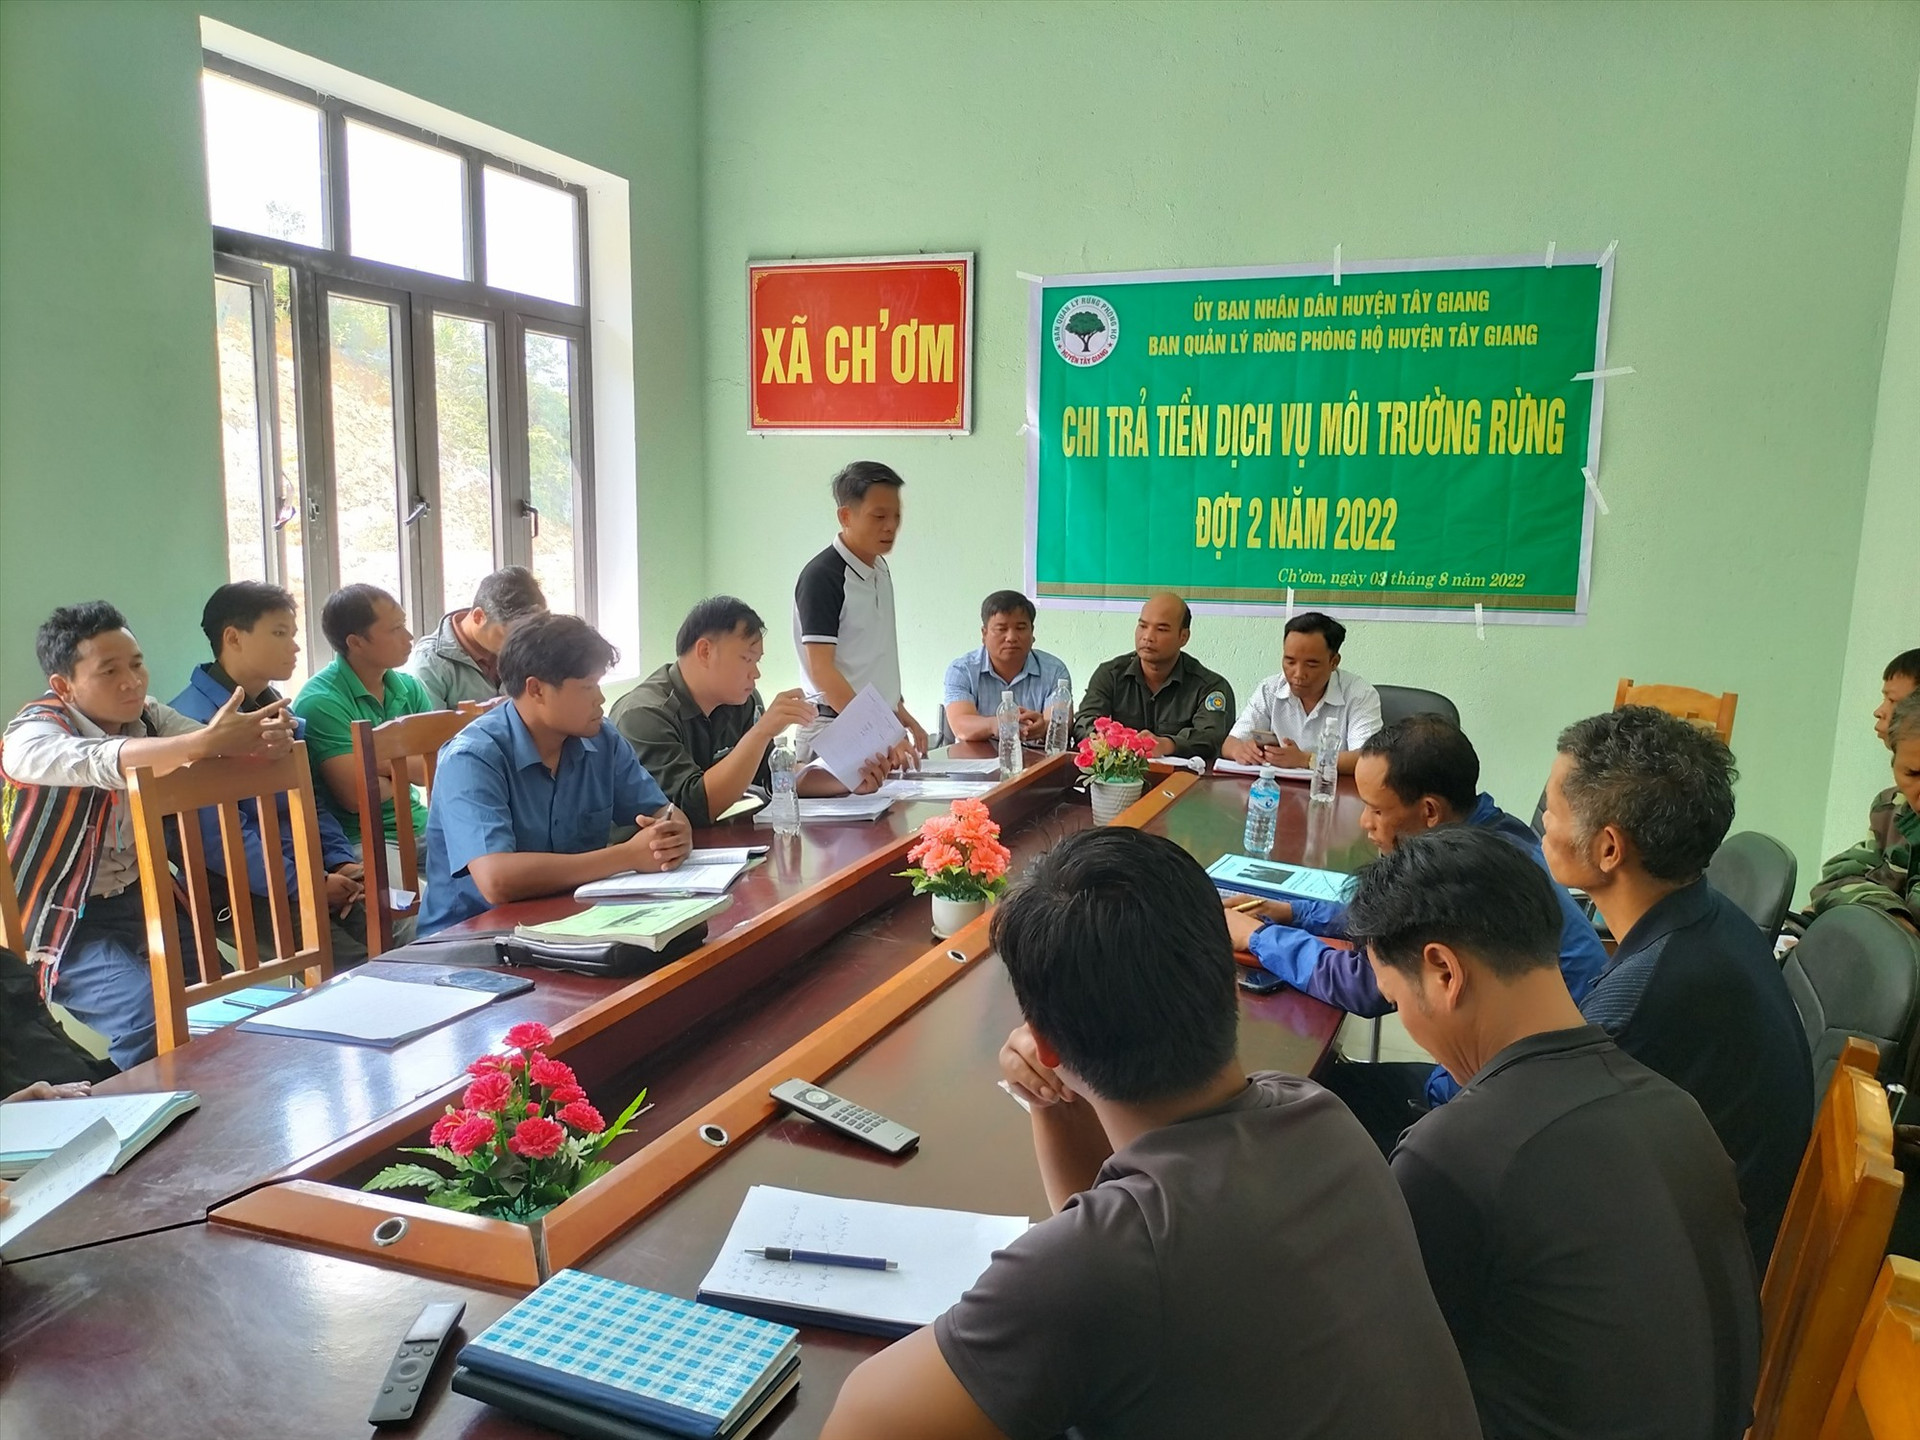 Ban Quản lý rừng phòng hộ huyện Tây Giang chi trả tiền đợt 2, tháng 8.2022 cho cộng đồng thôn tại xã Ch'Ơm (Tây Giang)